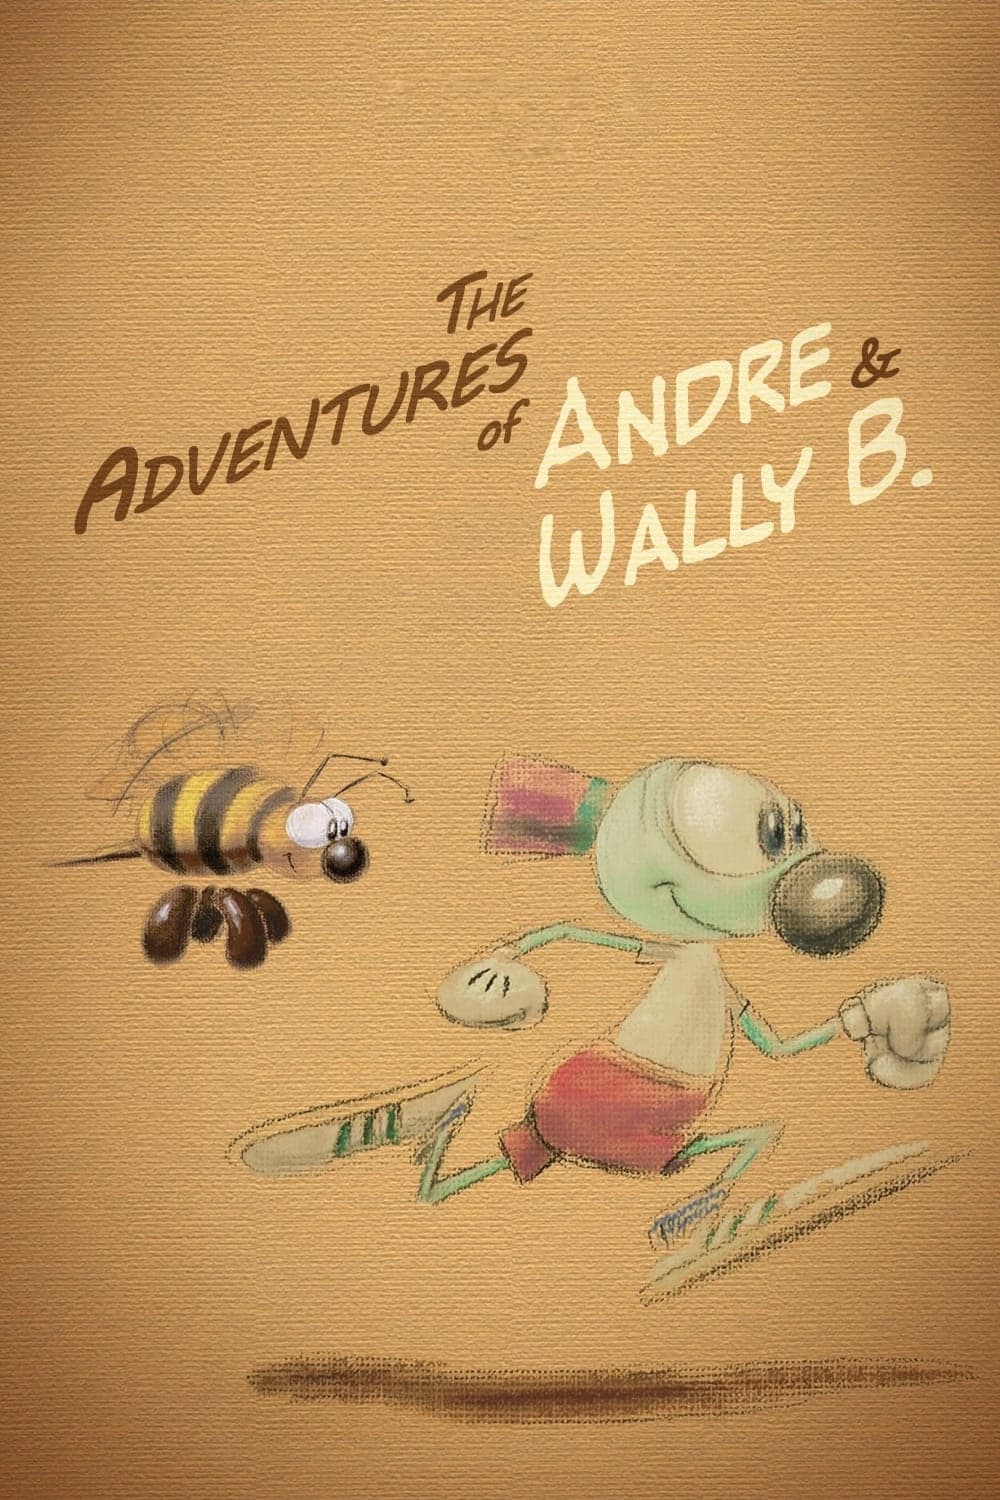 Die Abenteuer von André und Wally B. (1984)